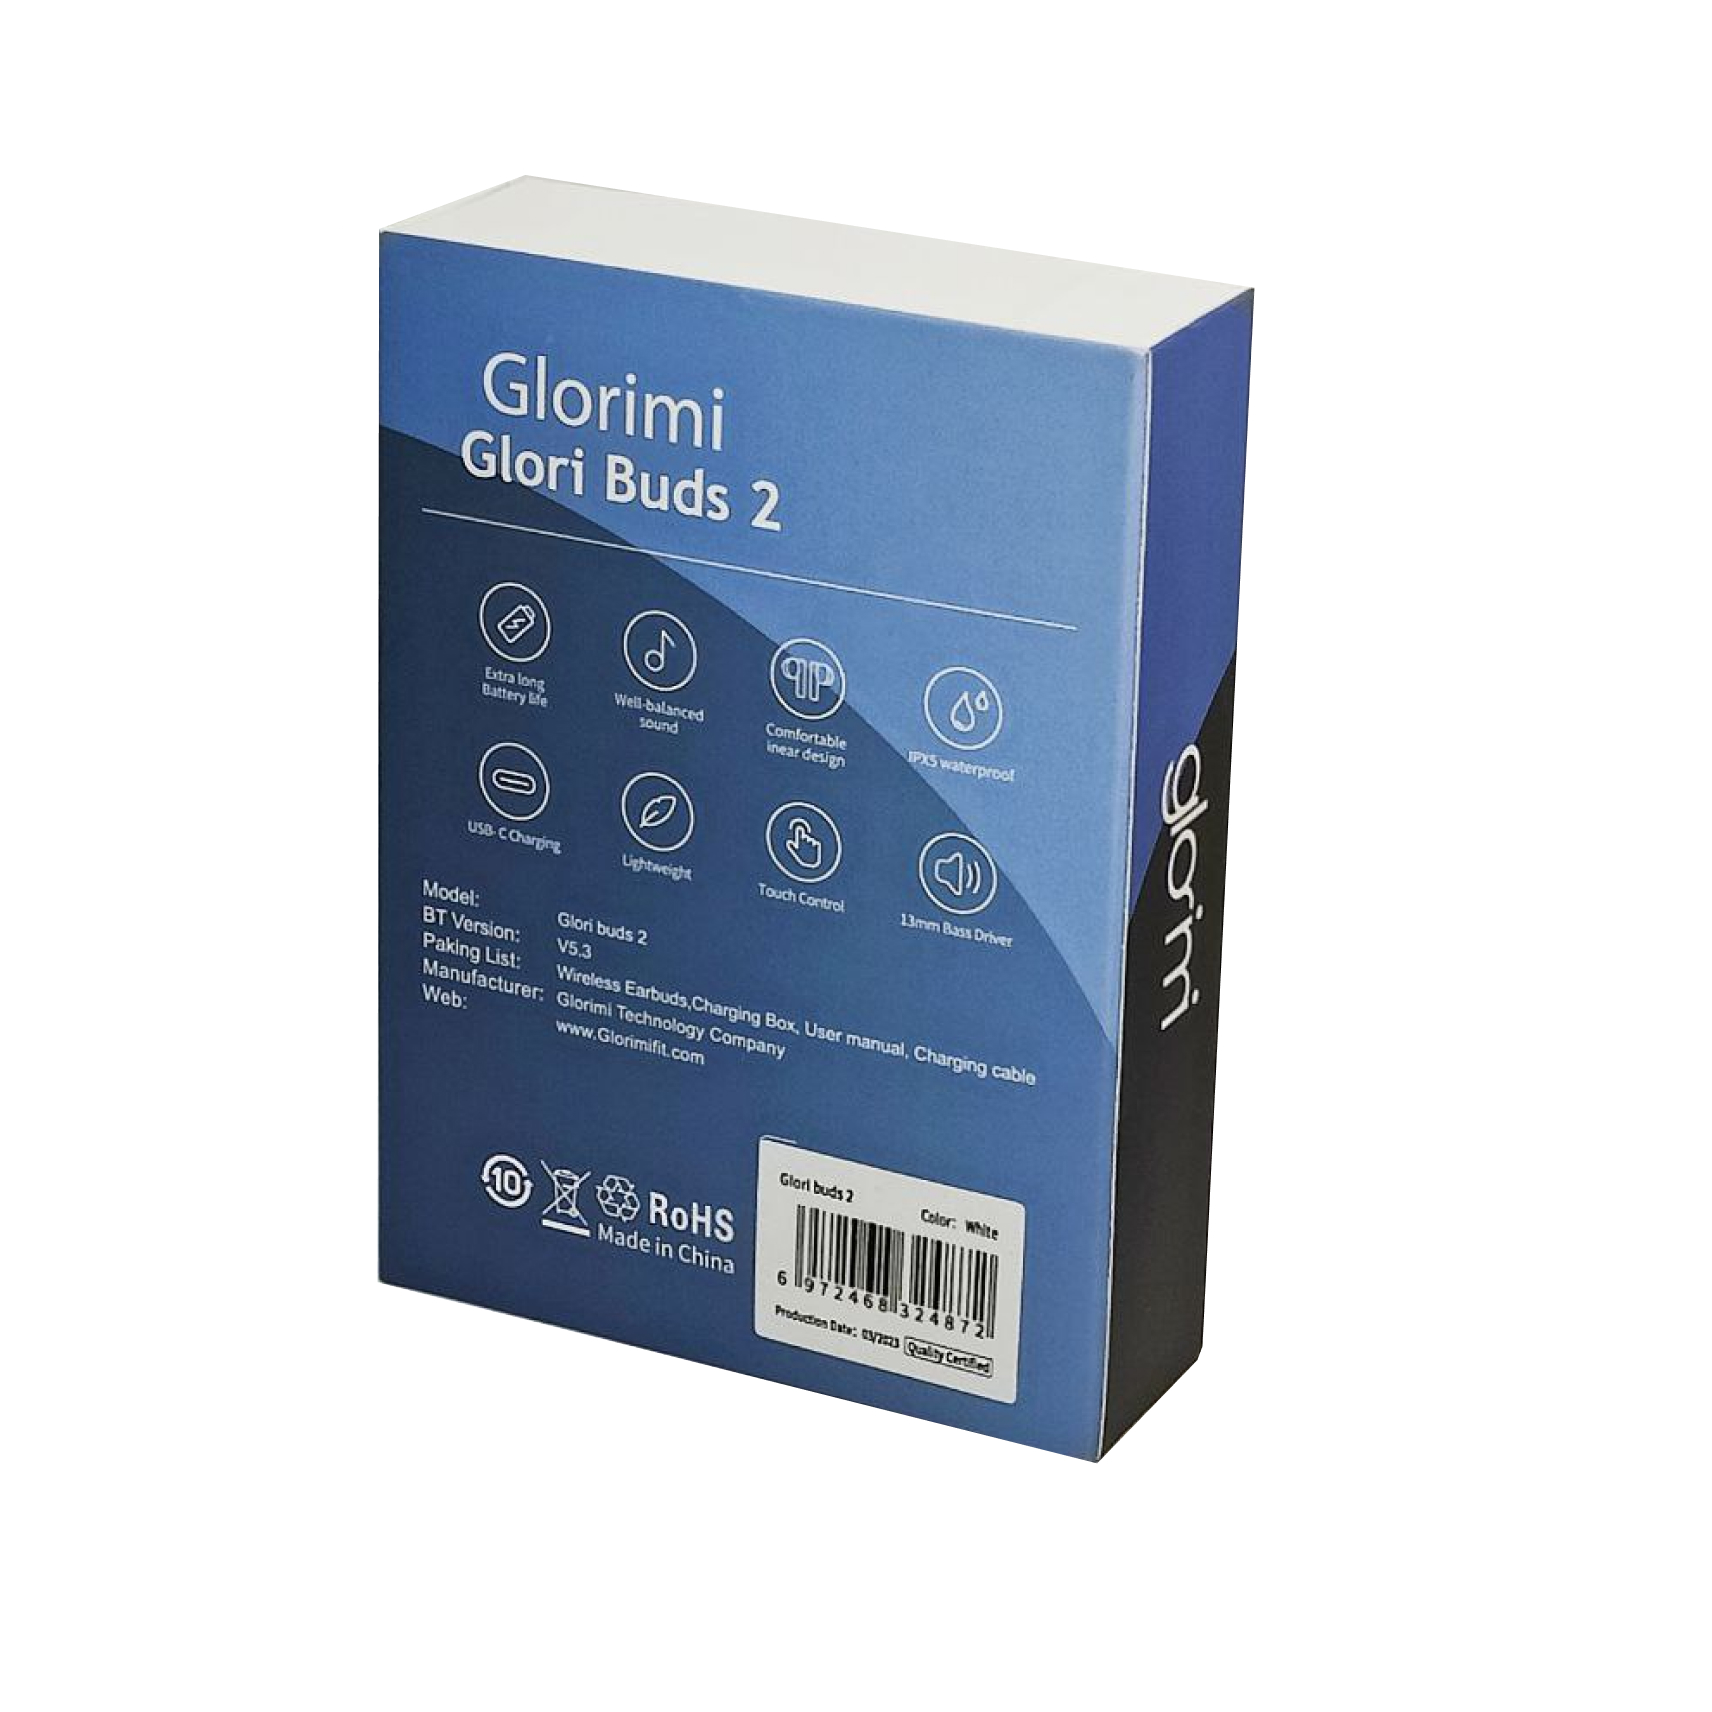 هدفون بی سیم گلوریمی مدل Glori Buds 2 با گارانتی ۱۲ ماه شرکتی